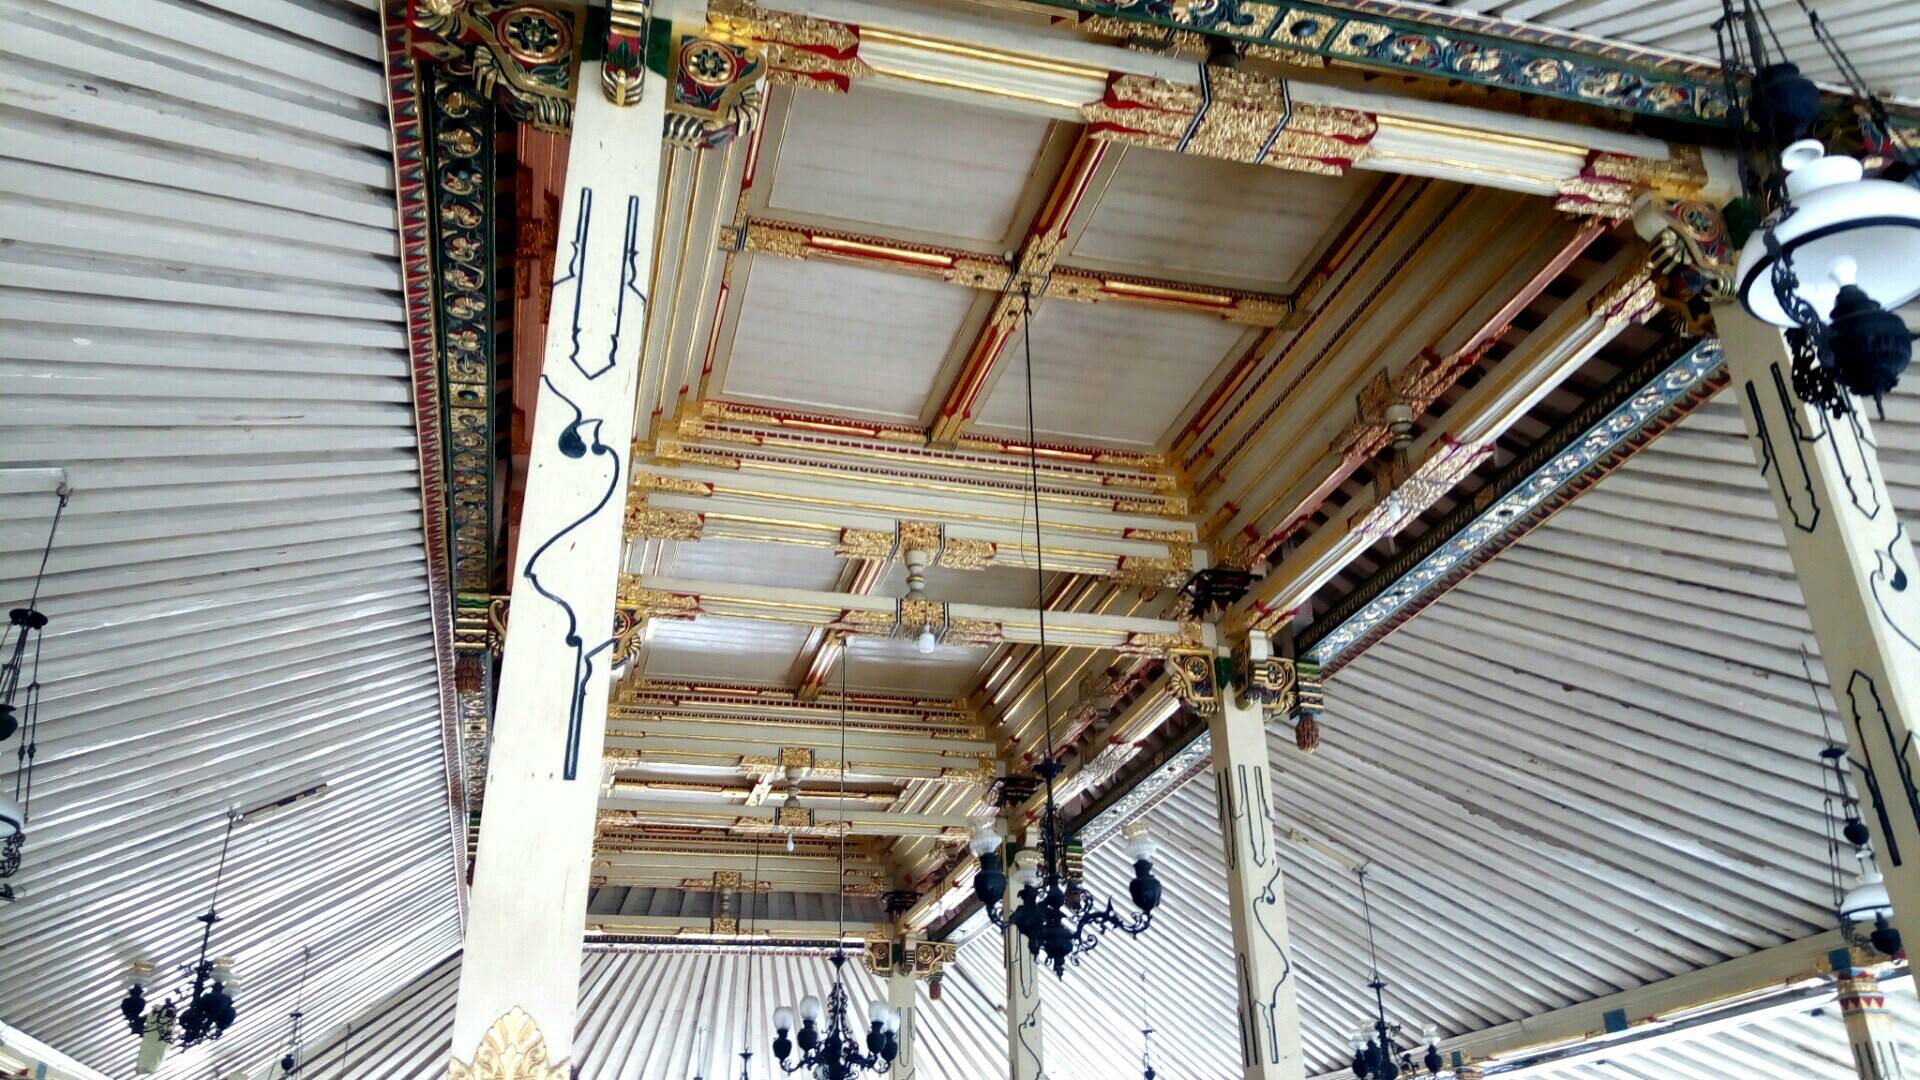 Masjid Gedhe Kauman